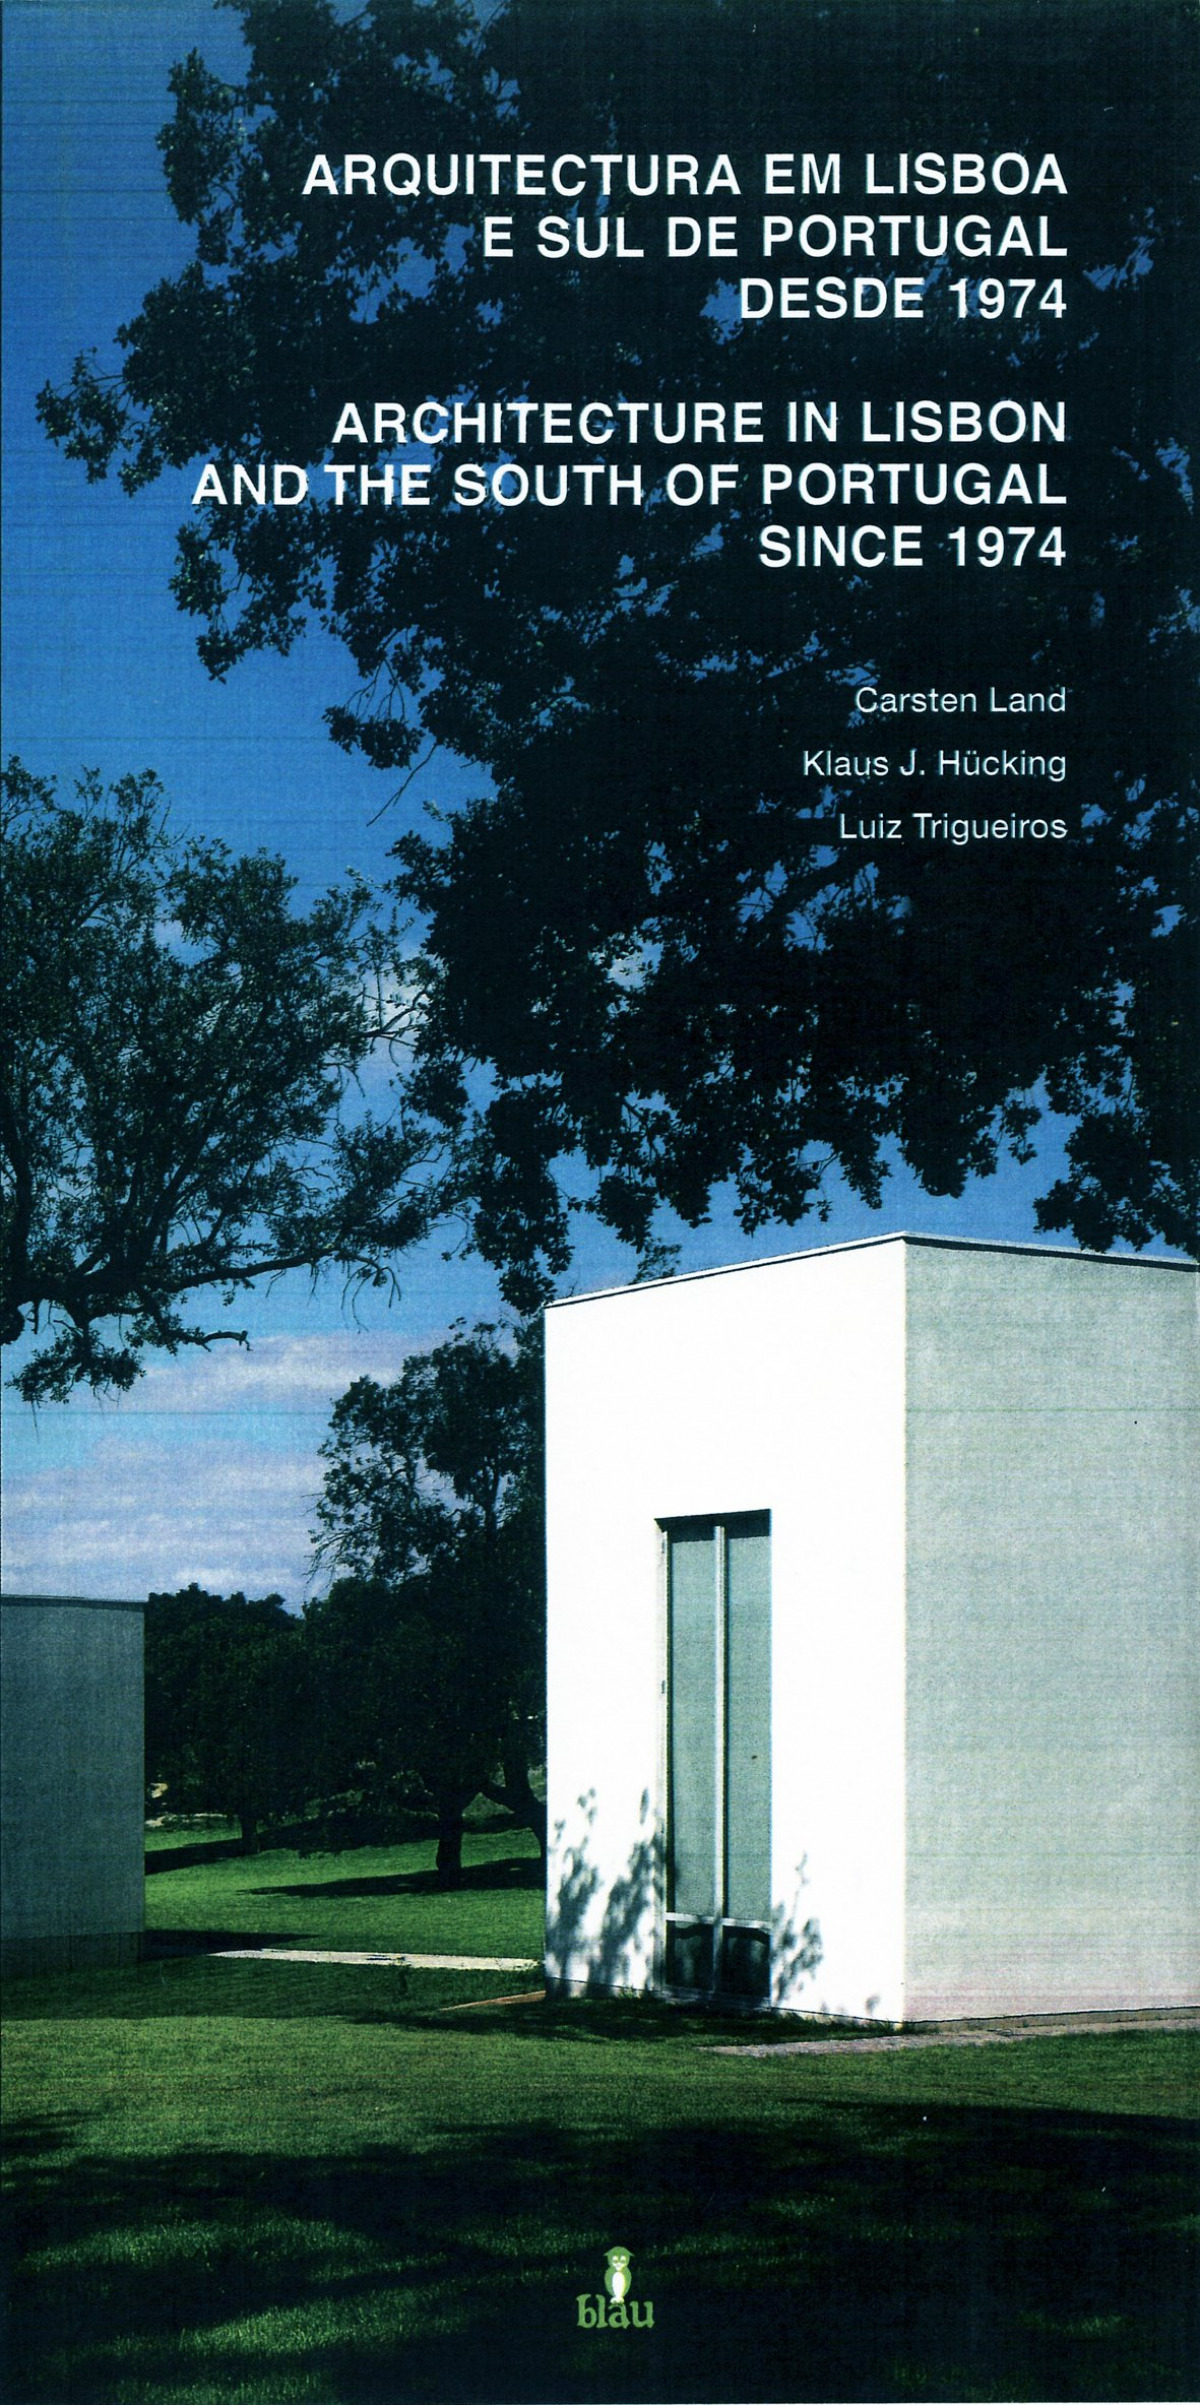 Arquitectura em Lisboa e sul de Portugal desde 1974 - Carsten Land, Klaus J.Hucking, Luiz Trigueiros